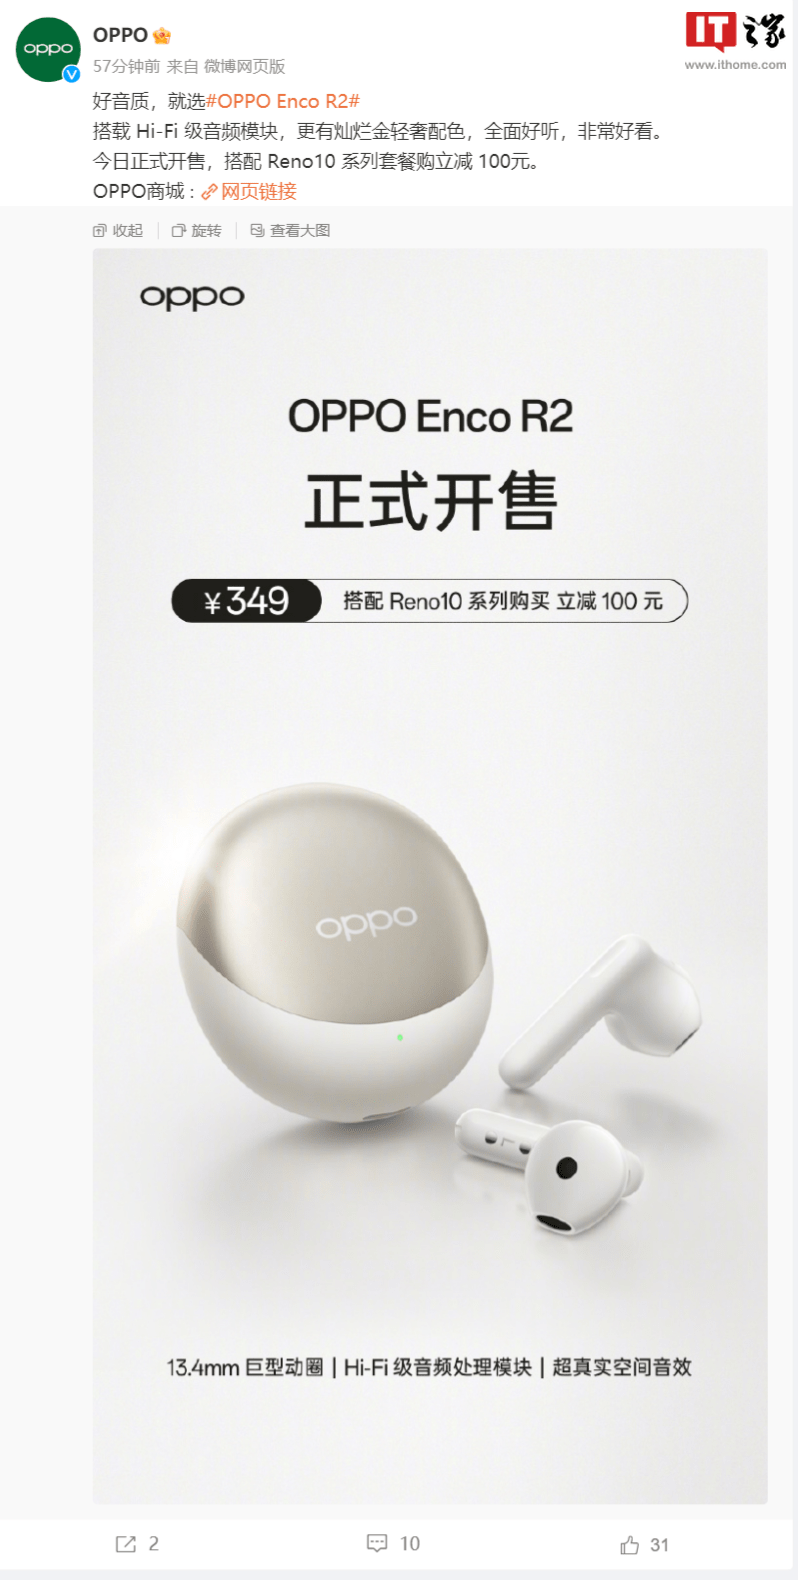 OPPO Enco R2无线耳机今日上午正式开售 采用全新“灿烂金”配色